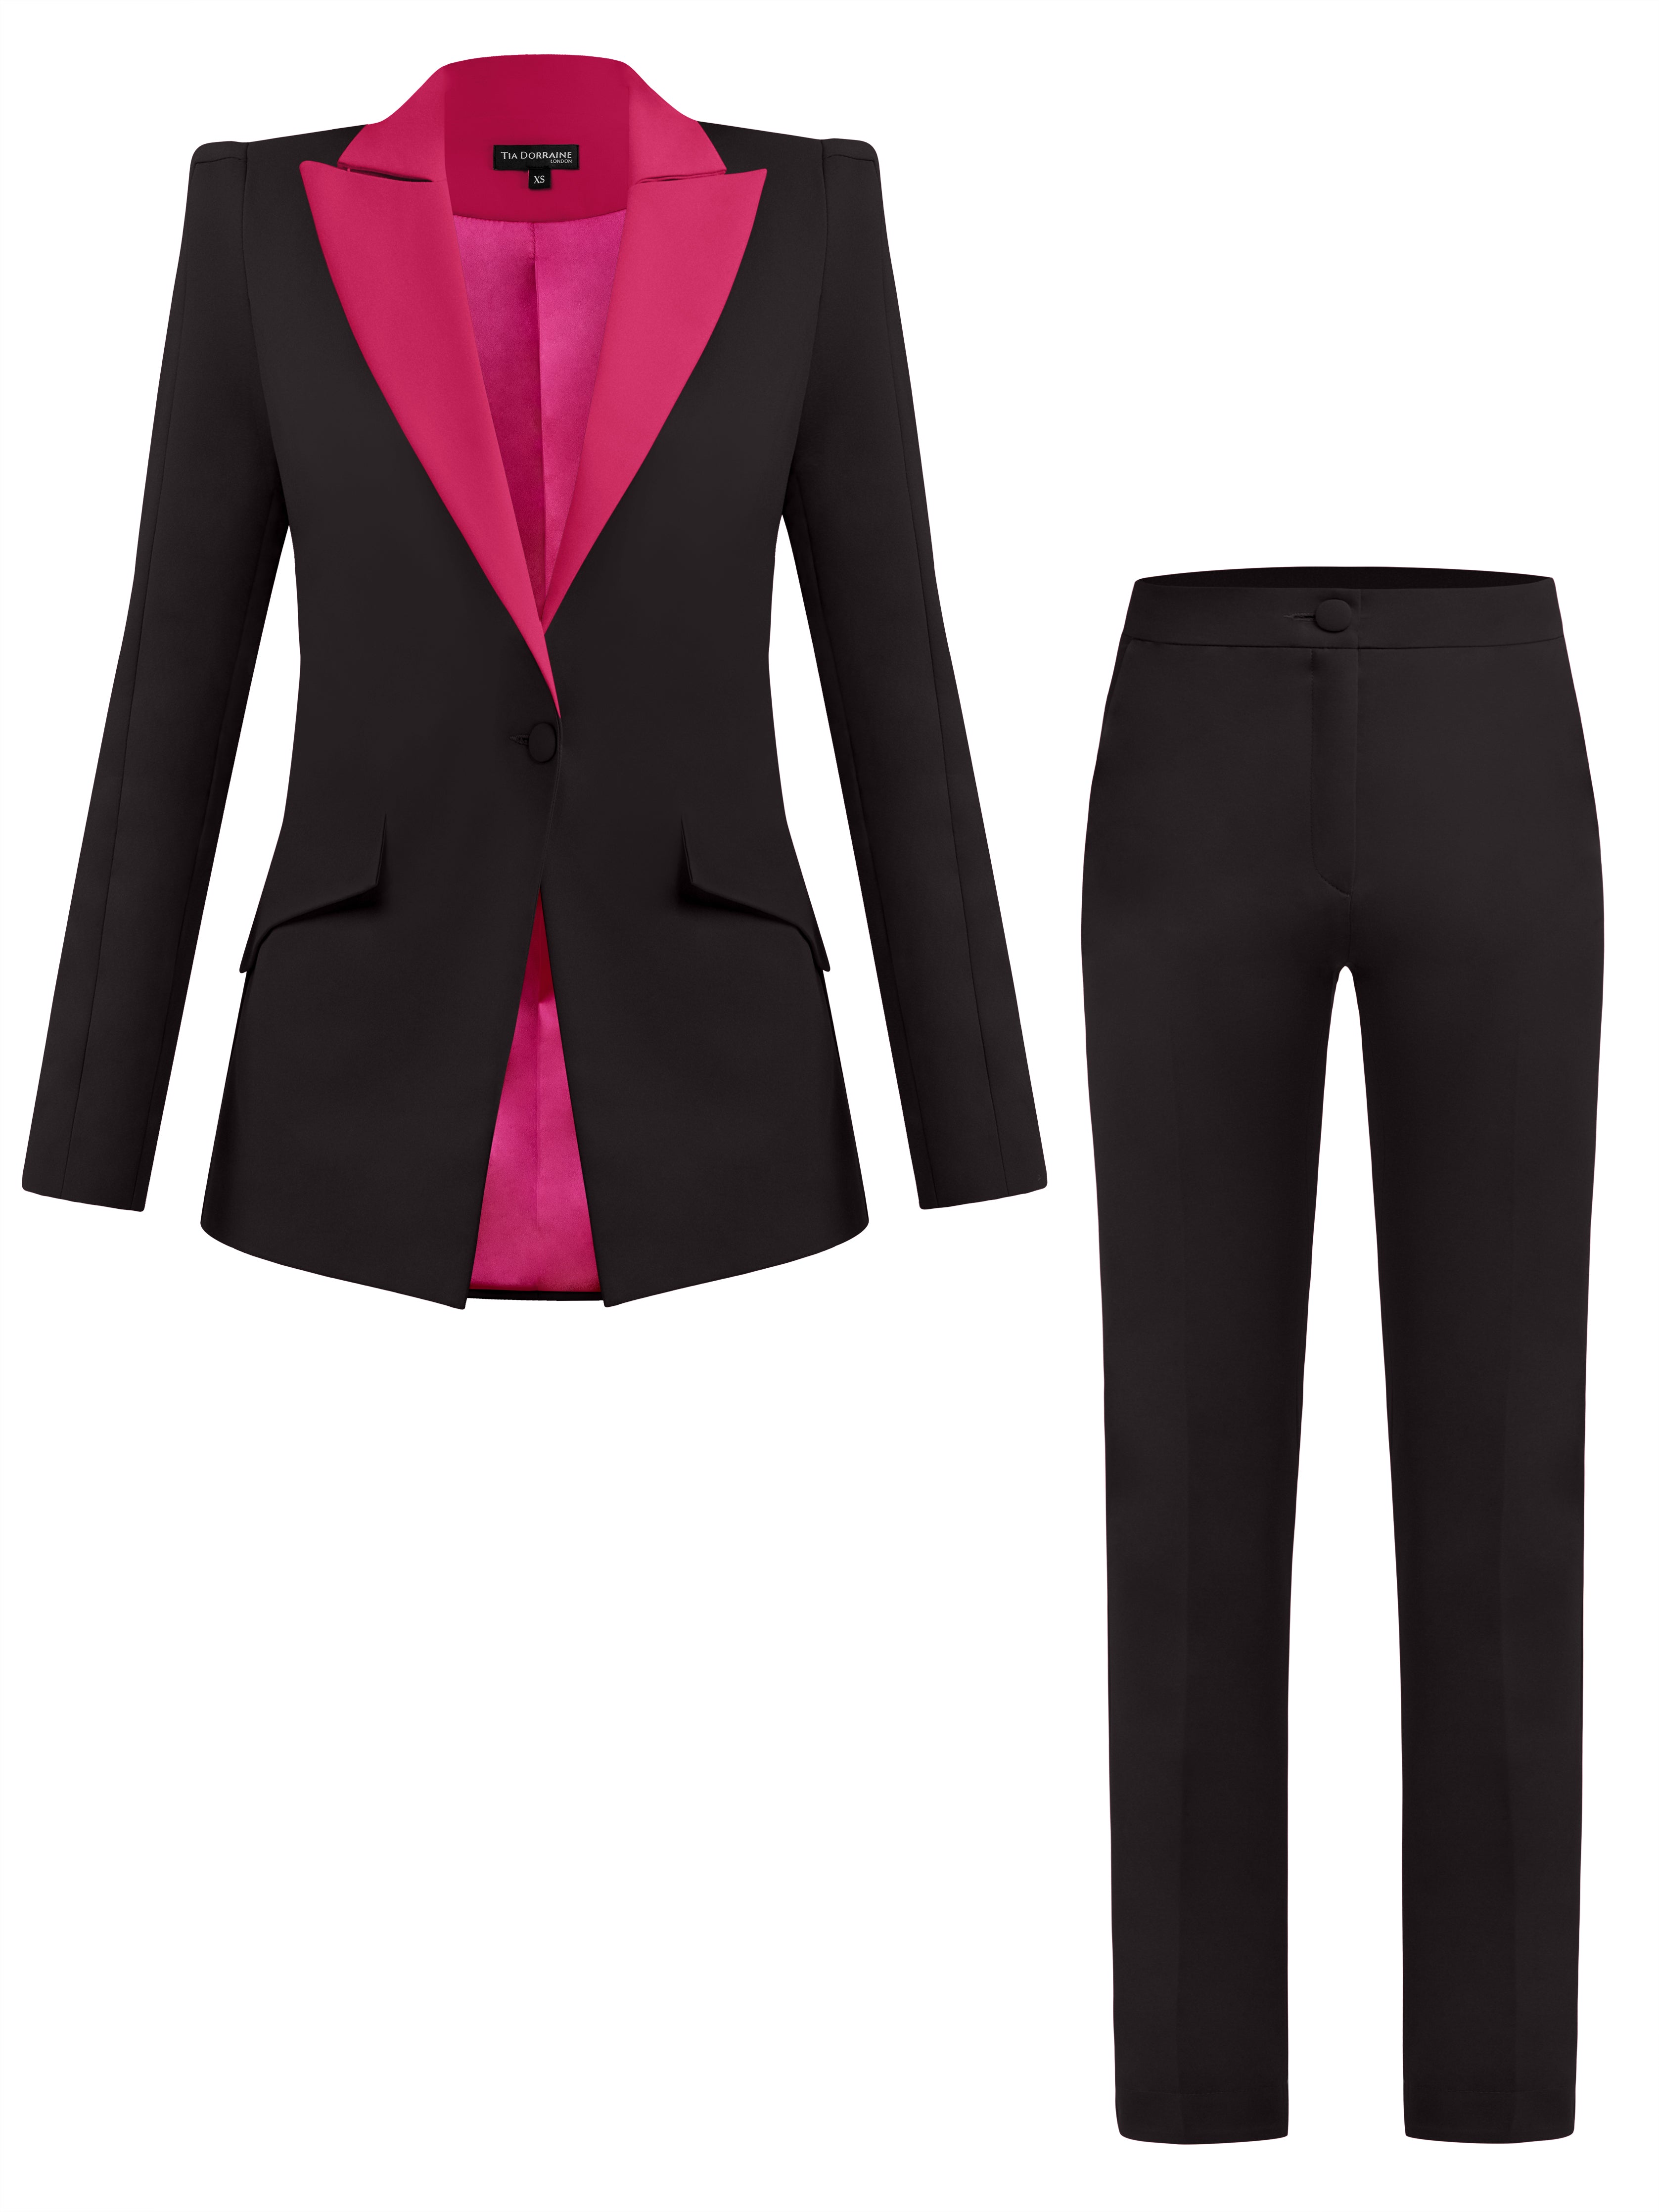 Tia Dorraine Black / Pink / Purple Illusion Classic Tailored Suit - Black & Pink